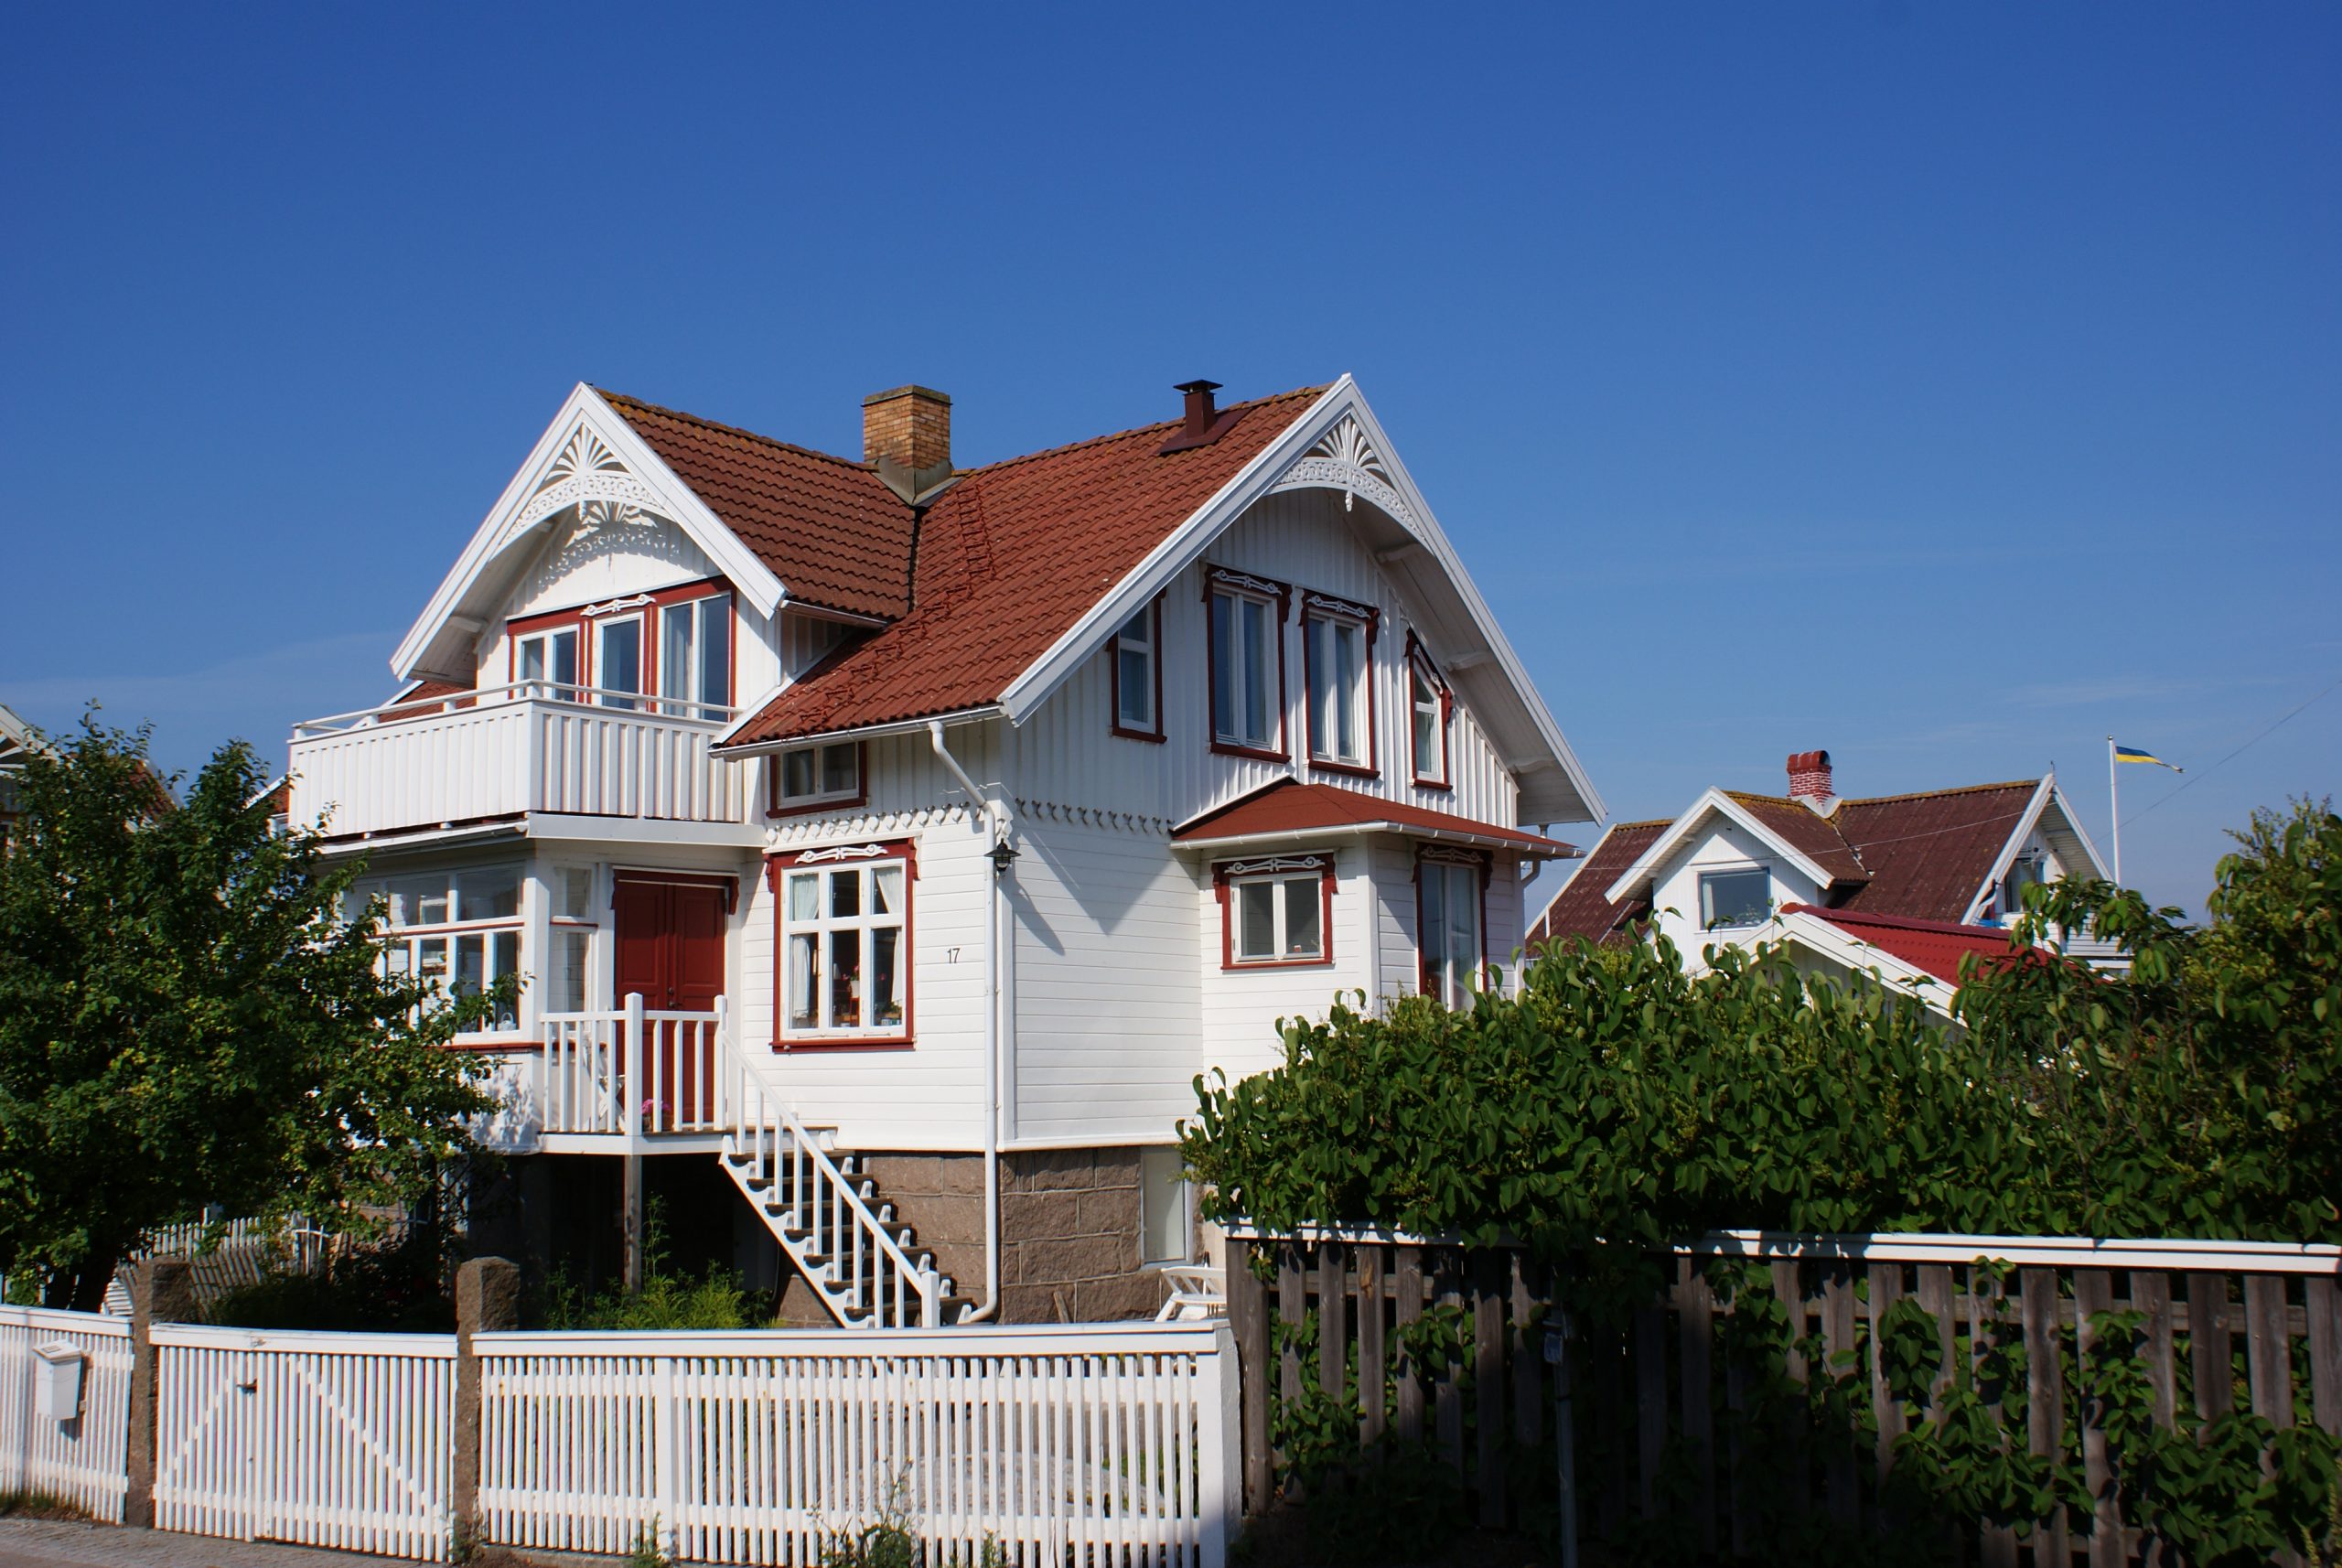 Foto: Ljusmålat bostadhus med veranda, frontespis, röda fönsterfoder och rött tegeltak.